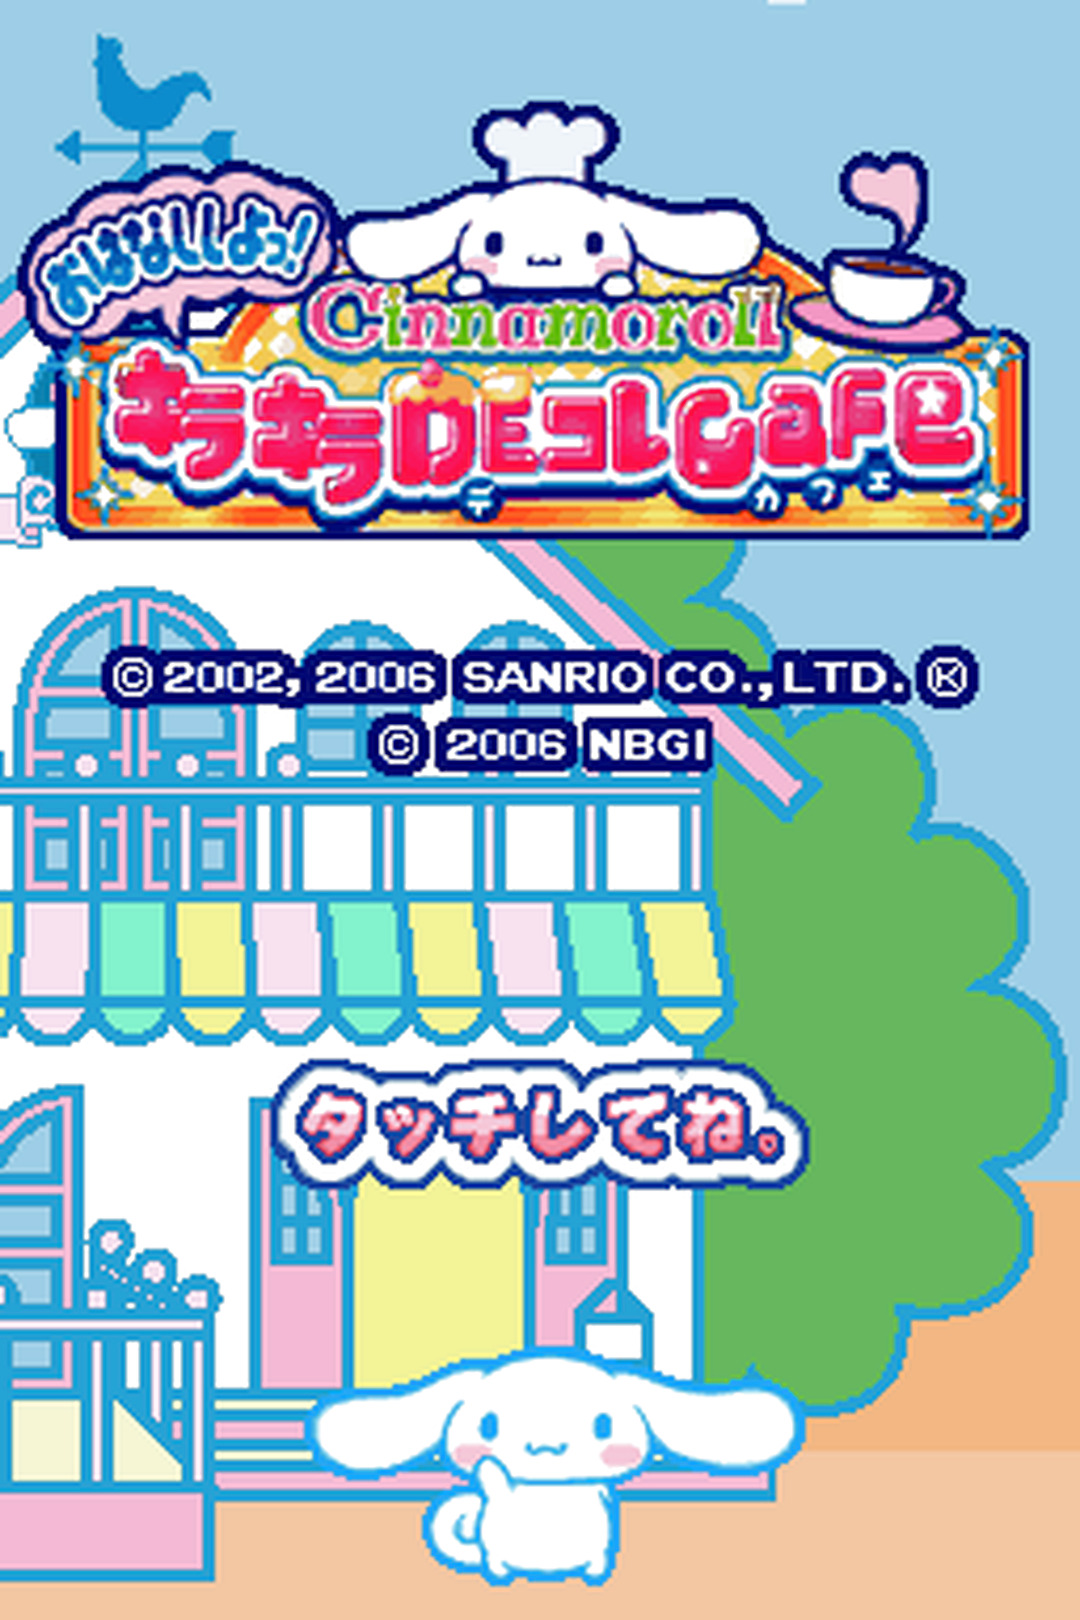 DS版『シナモロール おはなししよっ! キラキラDEコレCafe』 - ゲーム